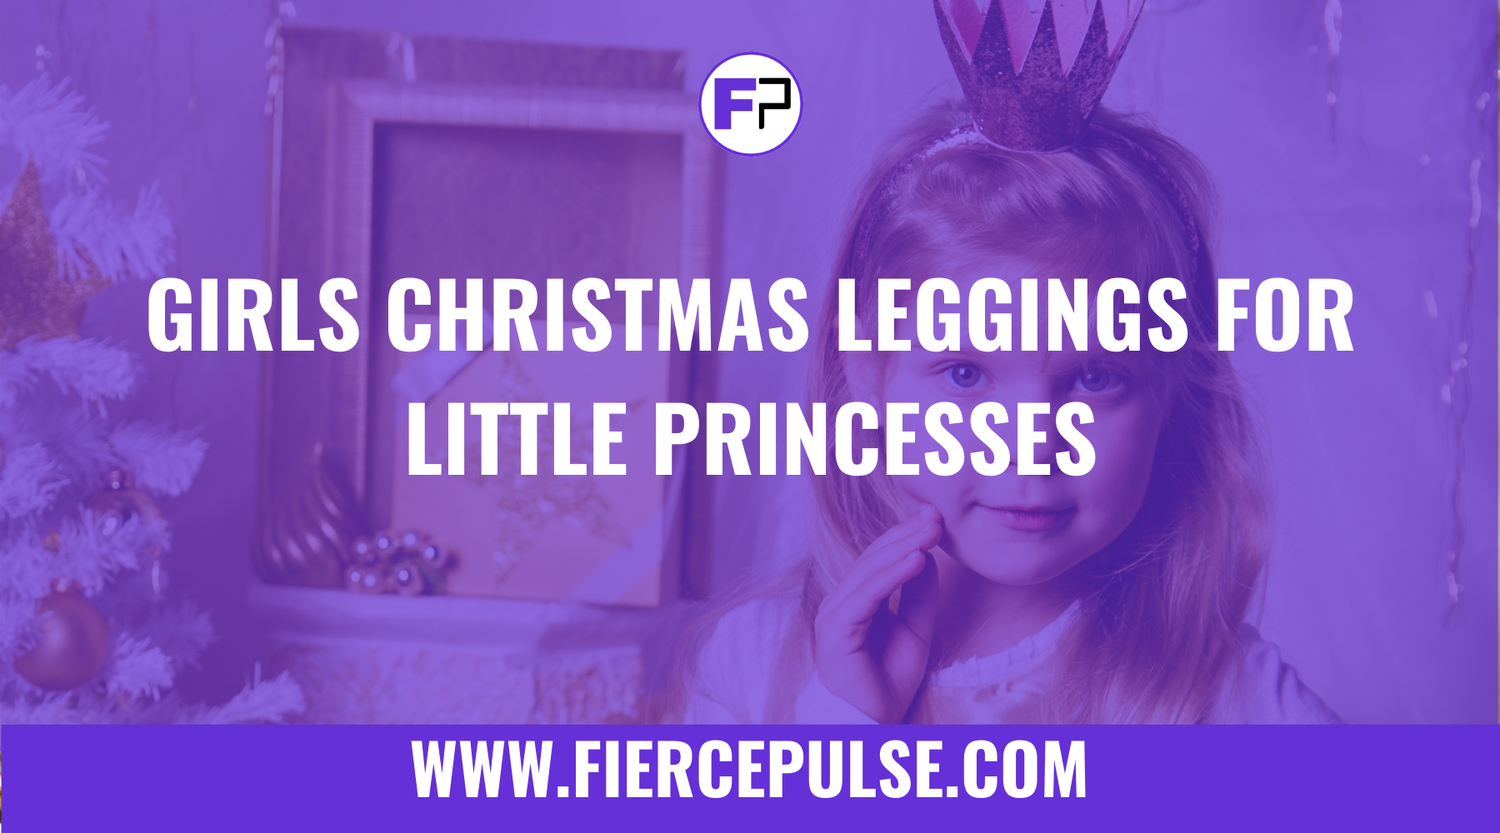 Girls Christmas Leggings for Little Princesses